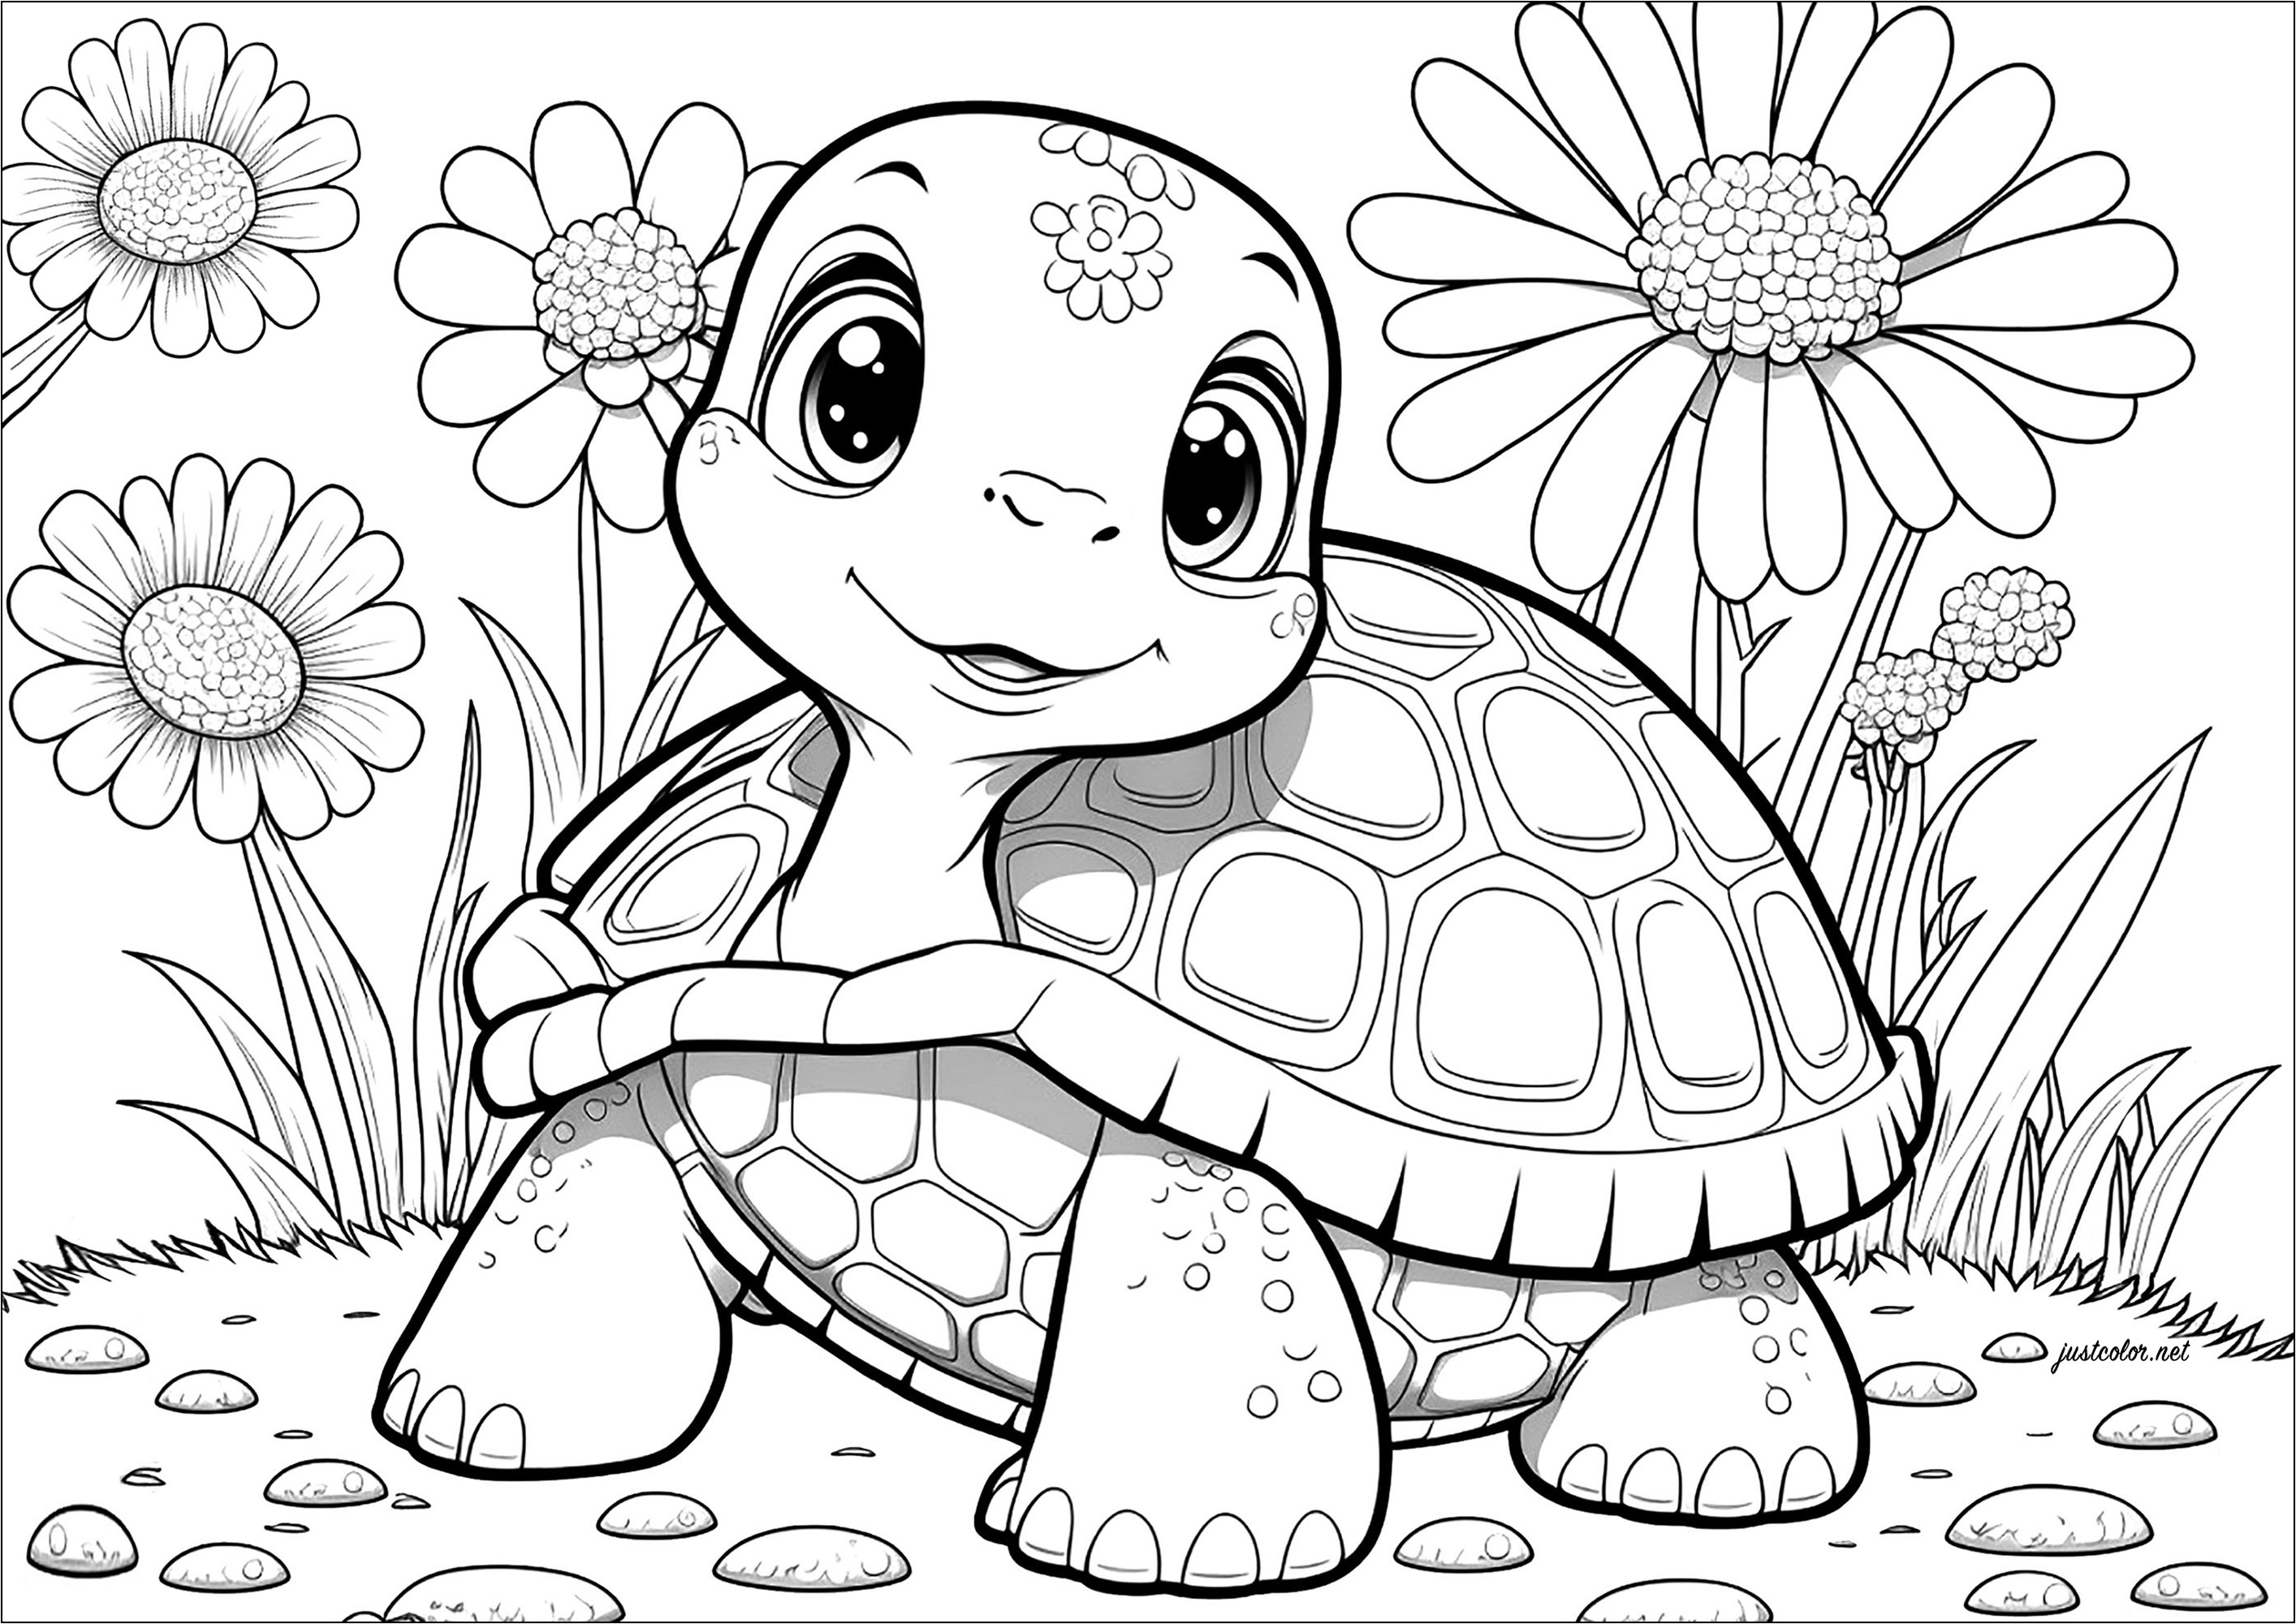 Colorate questa giovane e simpatica tartaruga, e tutti i fiori che la circondano. Osservate la determinazione della tartaruga mentre si dirige lentamente ma inesorabilmente verso la meta.